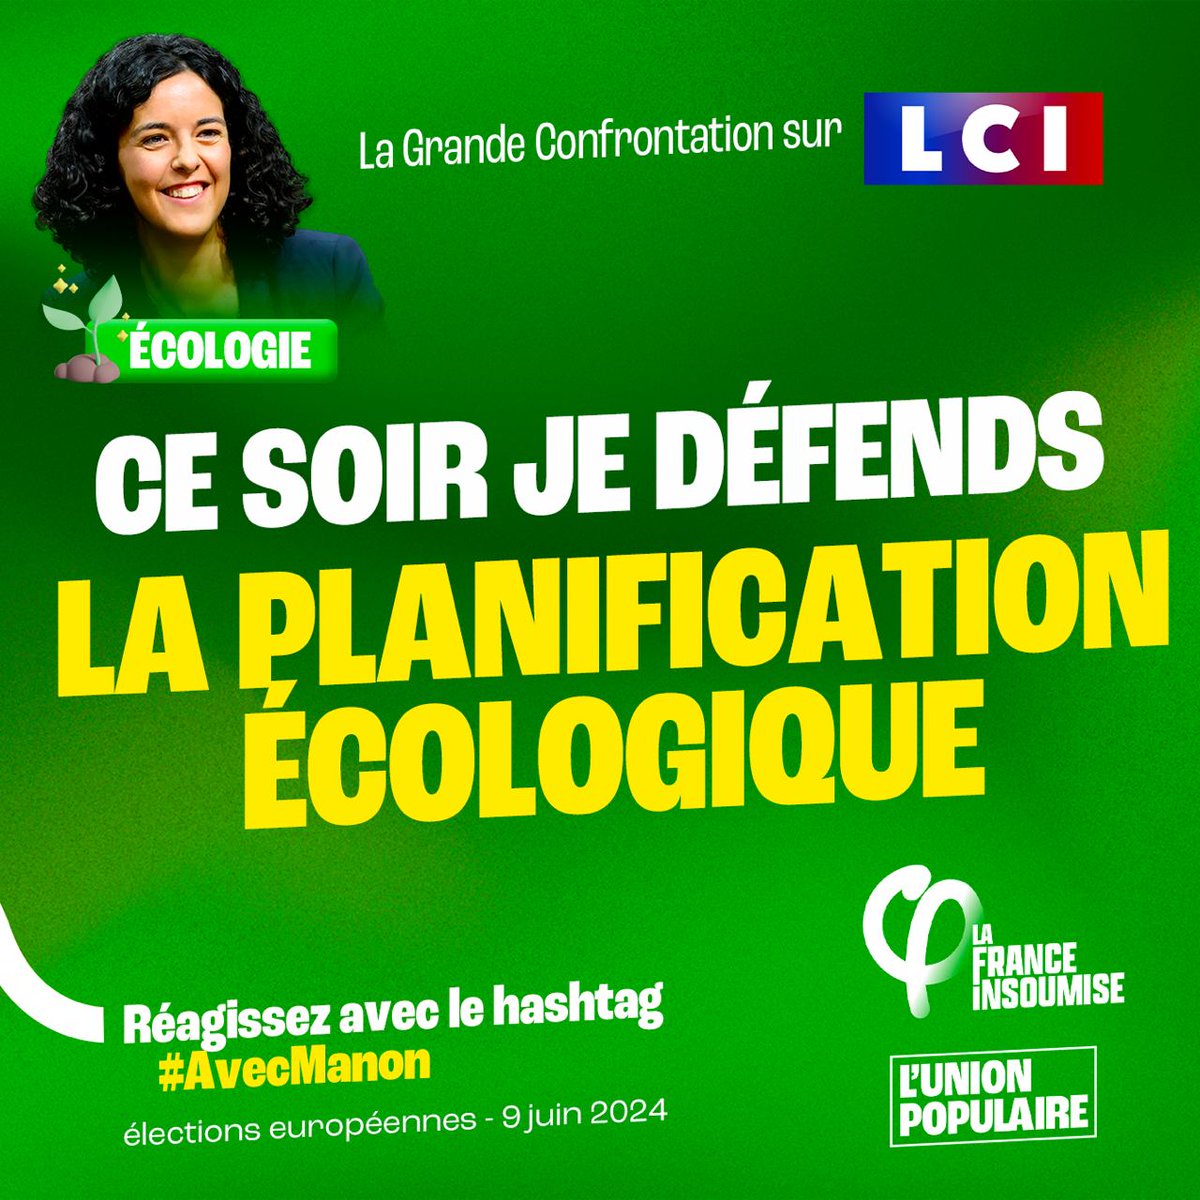 🌍 Vous voulez mettre en place la planification écologique ? ✅ Le 9 juin, votez pour la liste de l'#UnionPopulaire avec @ManonAubryFr ! #LaGrandeConfrontation #AvecManon